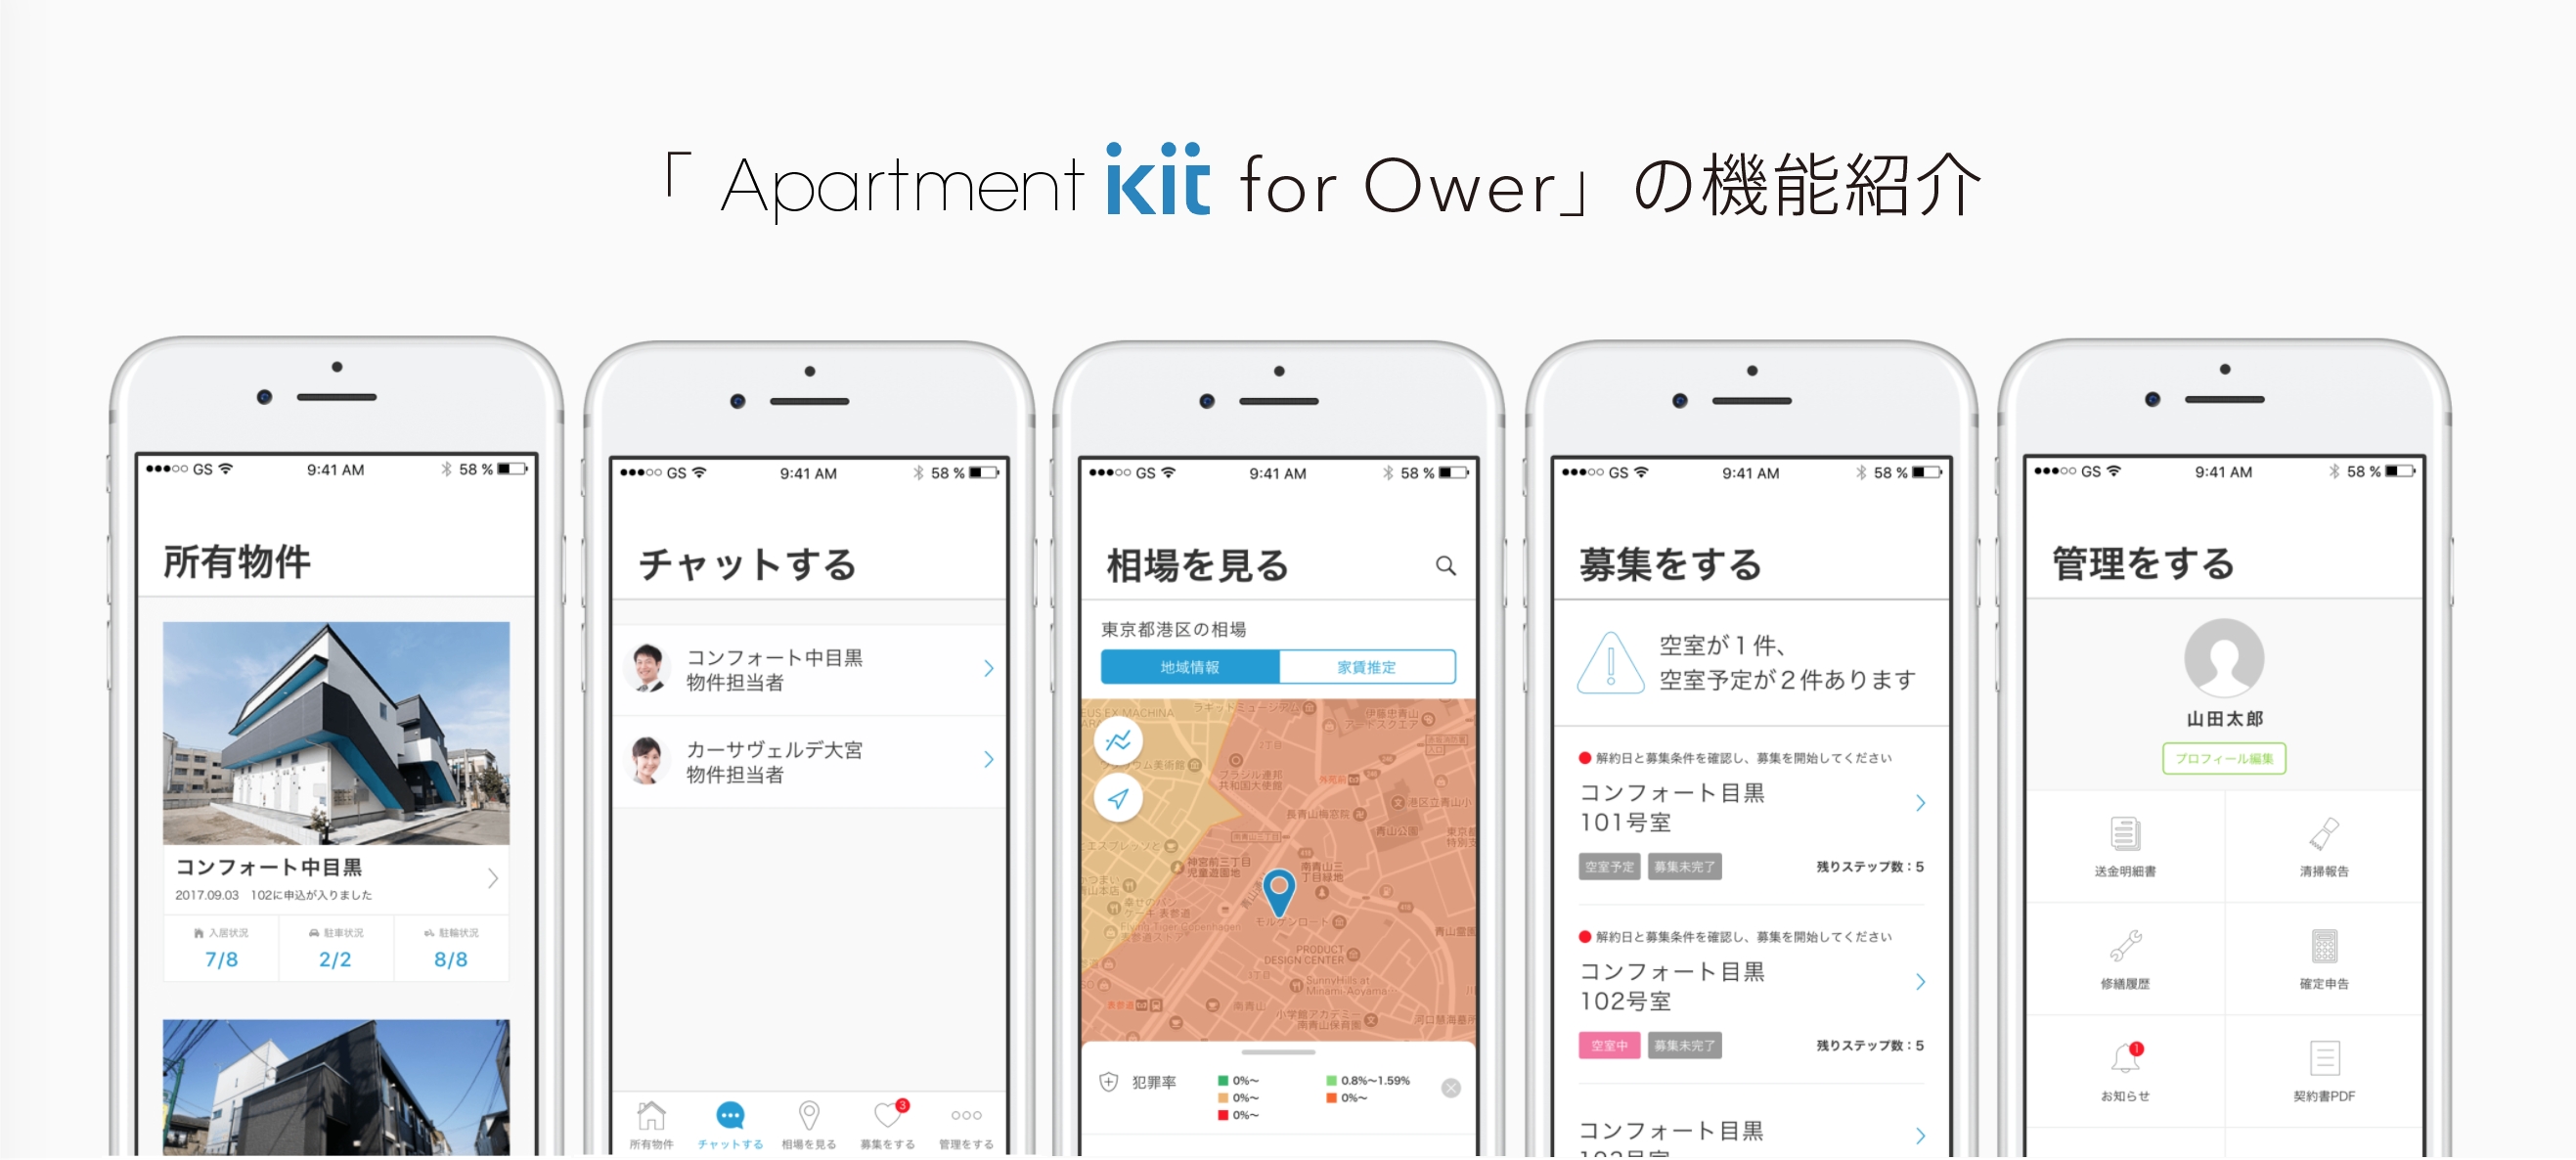 賃貸オーナーのための、賃貸経営アプリ 「Apartment kit for Owner」の提供決定 「Apartment kit」による ...